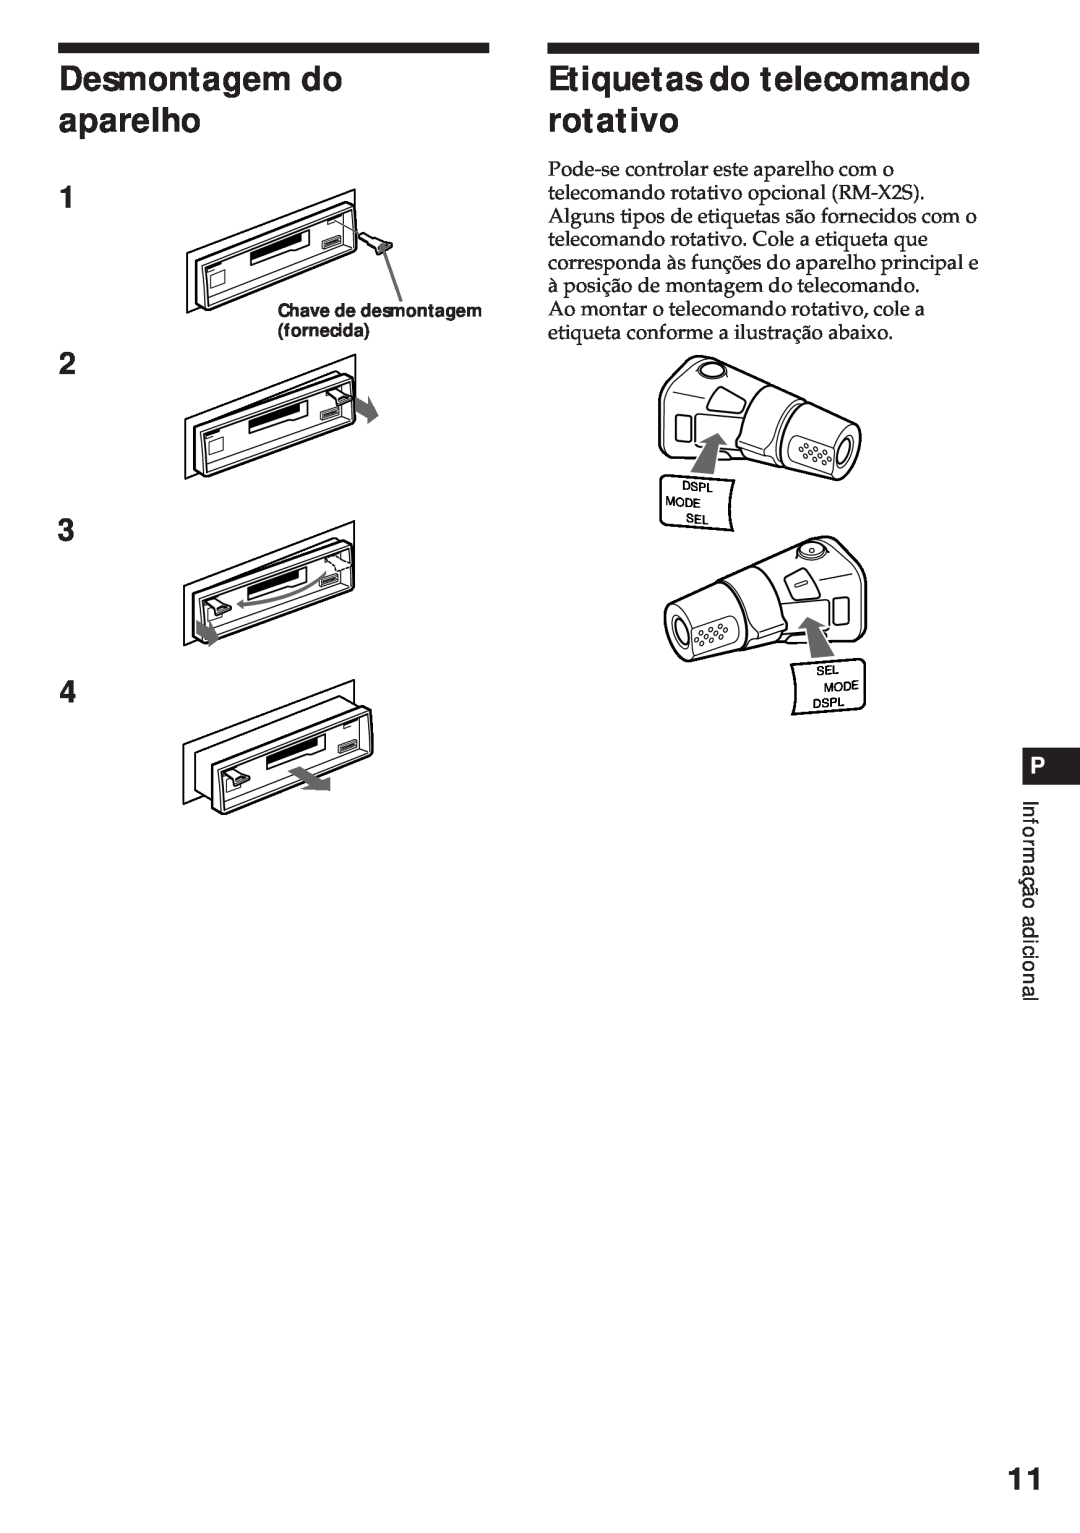 Sony XR-3750 operating instructions Desmontagem do aparelho, Etiquetas do telecomando rotativo, Informação adicional 